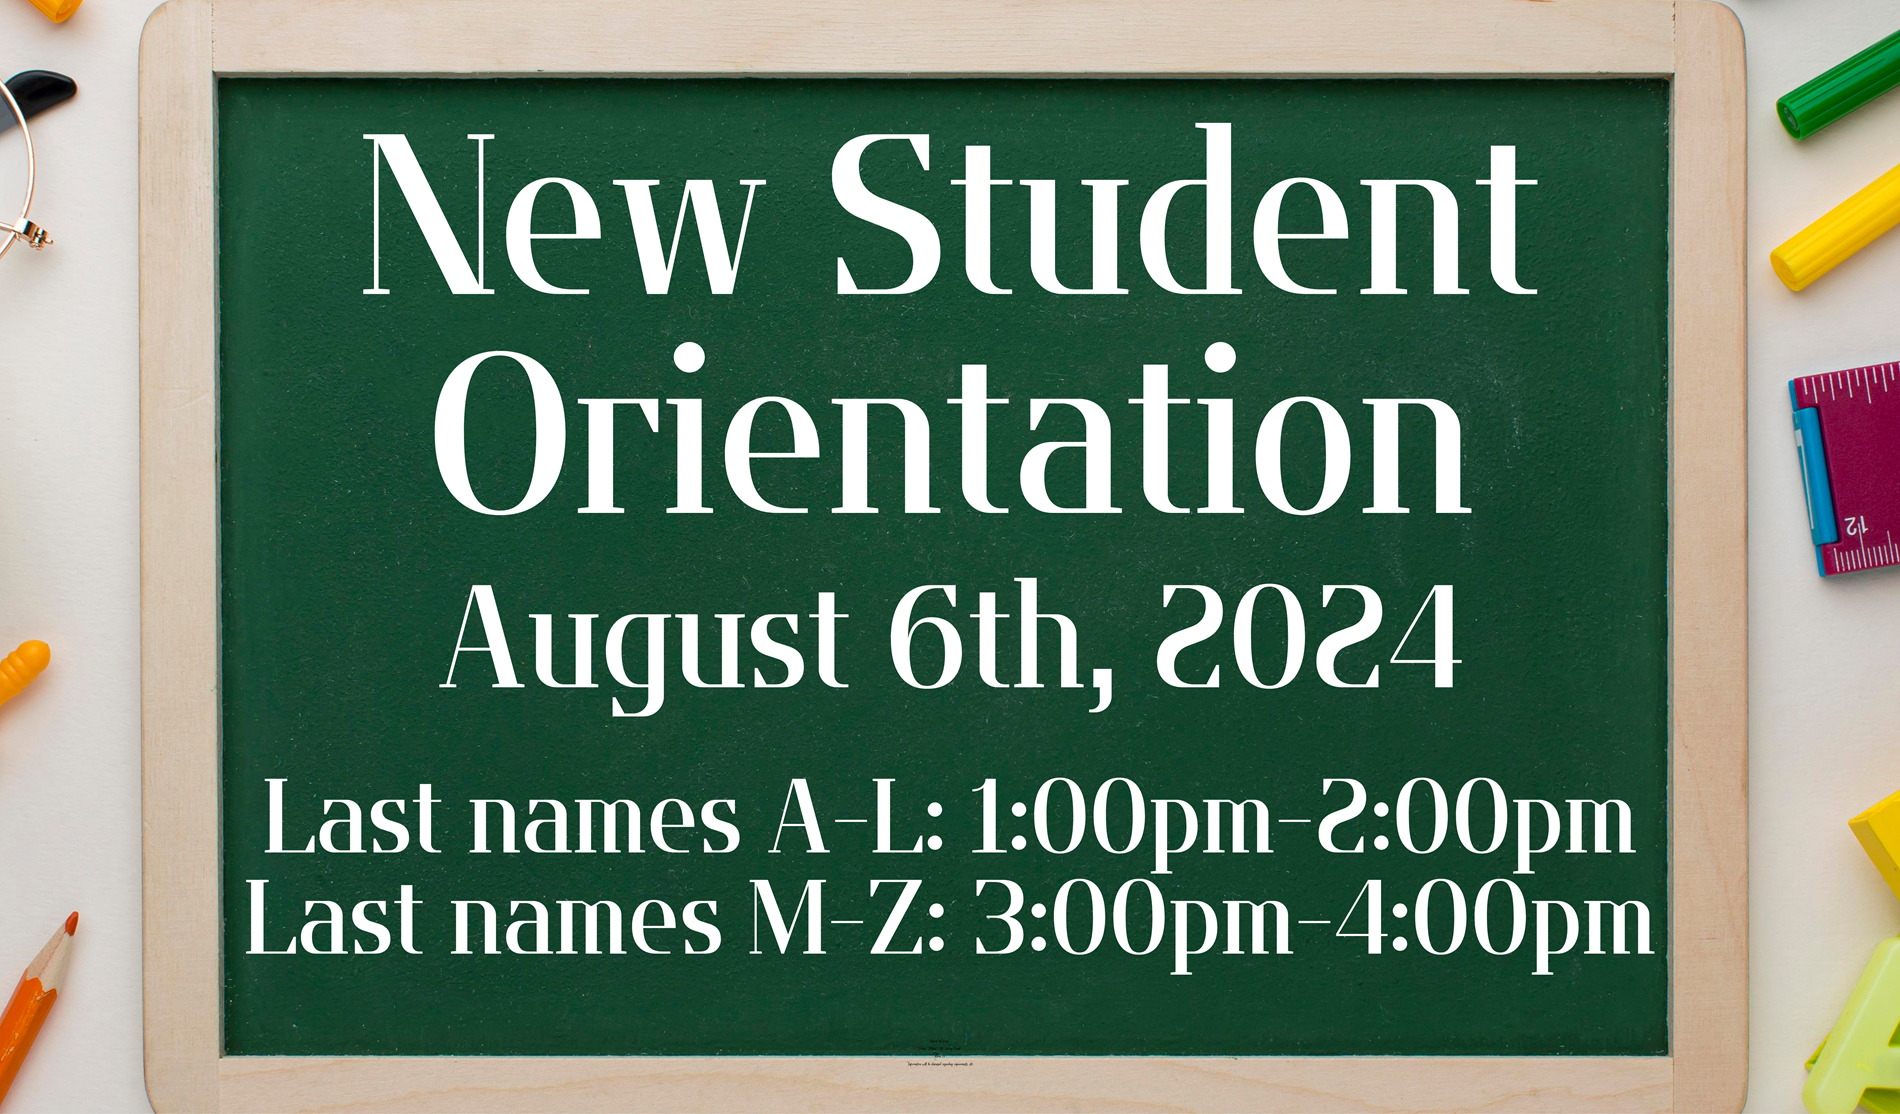 New student orientation Last names A-L: 1:00pm-2:00pm Last names M-Z: 3:00pm-4:00pm August 6th PJHS gym